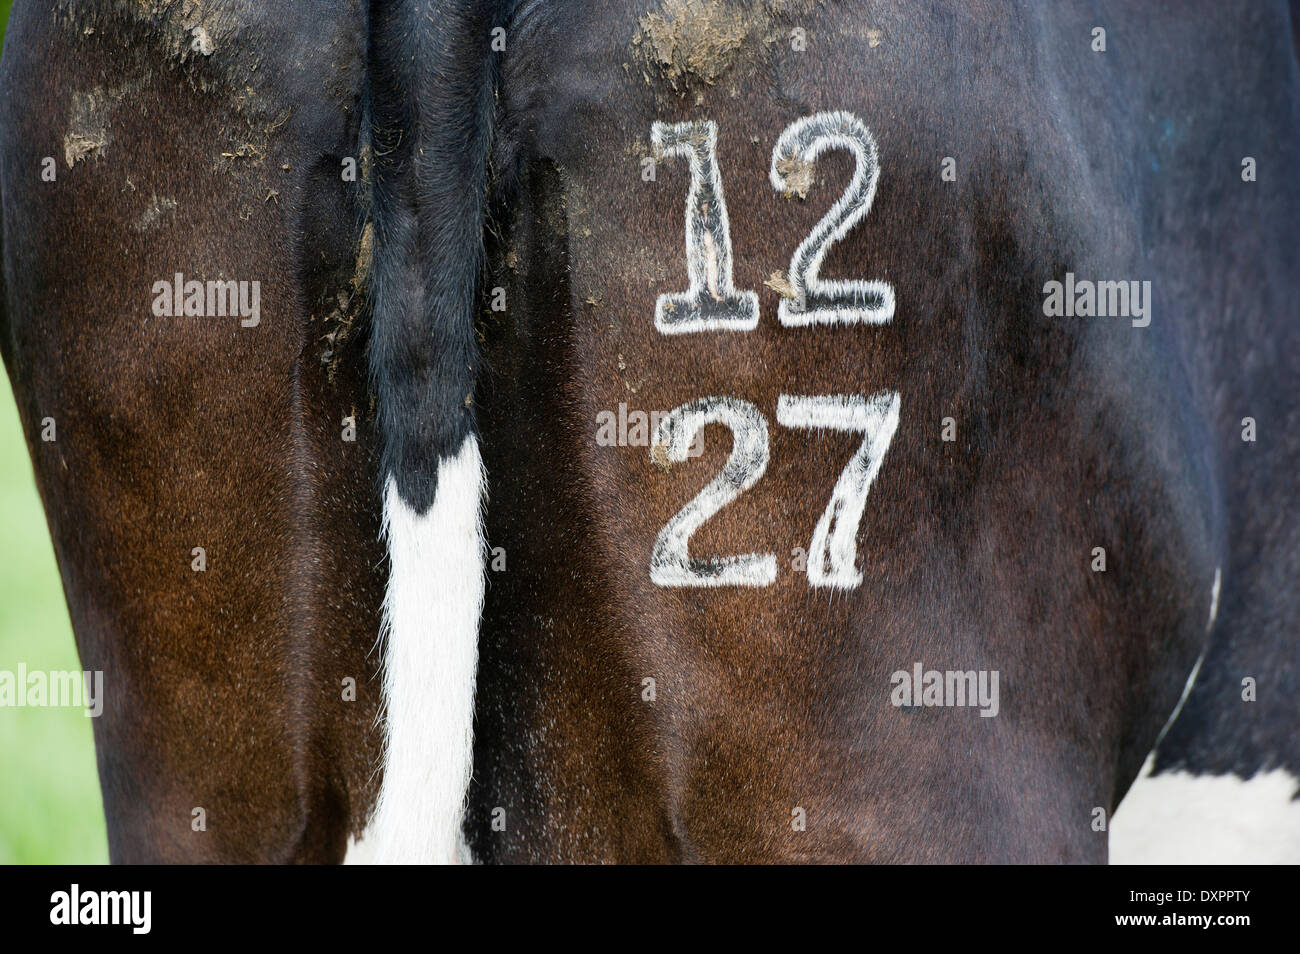 Mucca con numero di identificazione con il marchio di congelamento sulla sua parte posteriore. Cumbria, Regno Unito Foto Stock